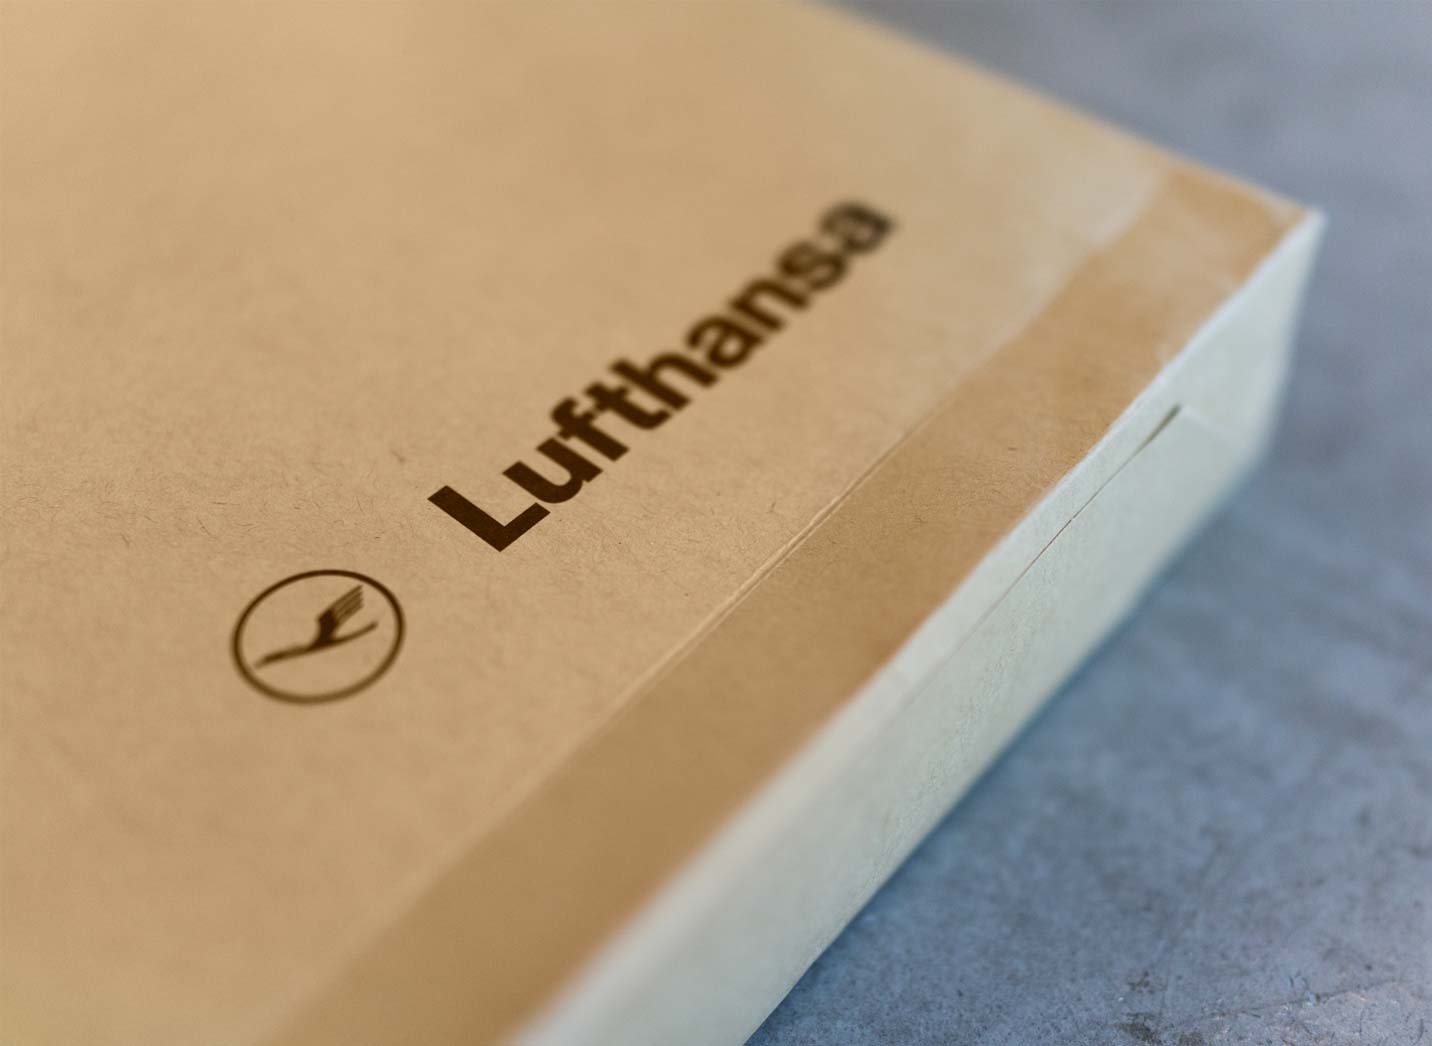 Lufthansa giveaway sweatshirt